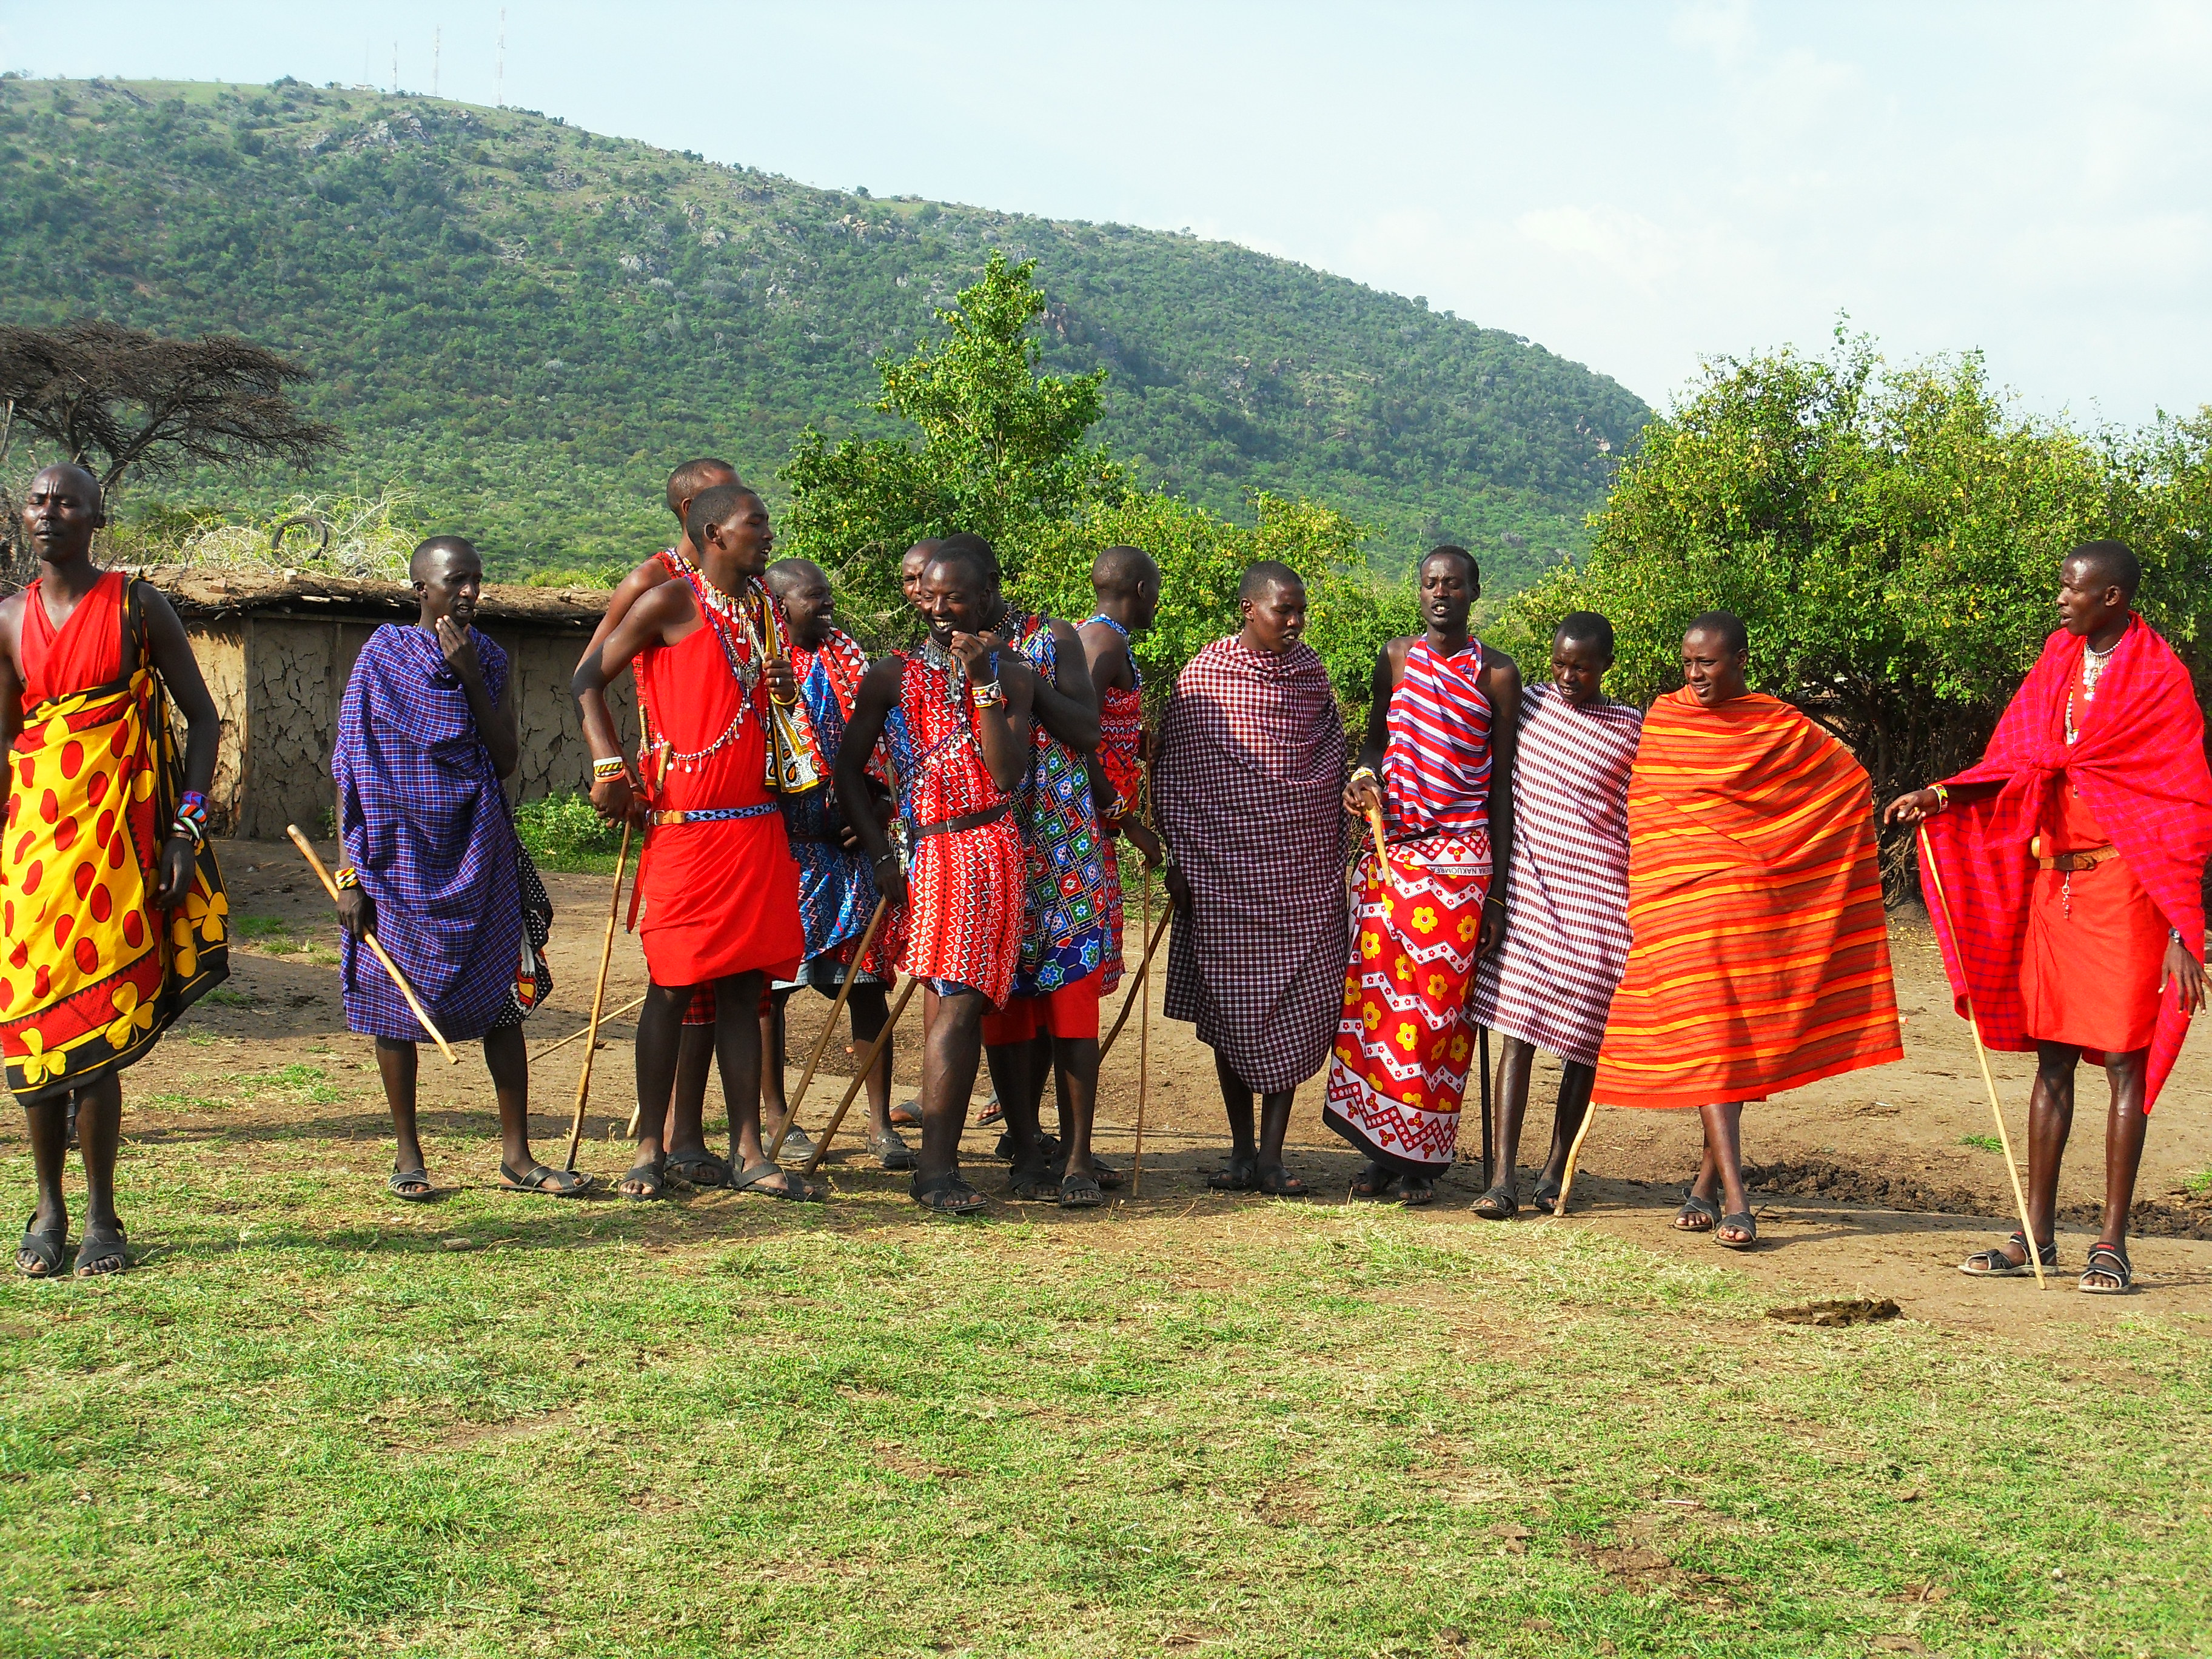 Energheia in visita ad un villaggio Masai, nella regione del Masai Mara in Kenya